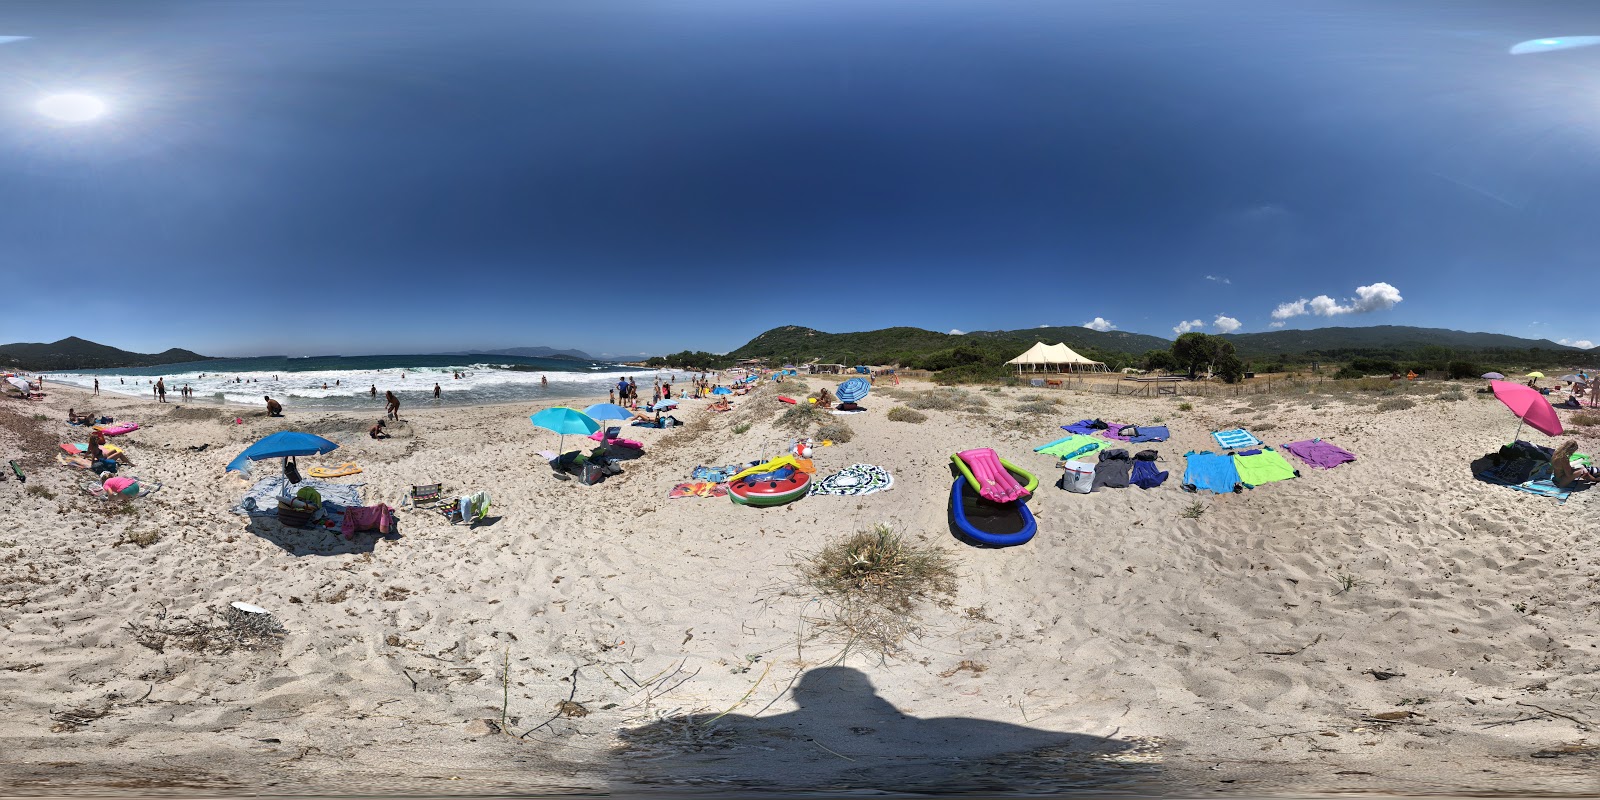 Zdjęcie Ruppione beach - popularne miejsce wśród znawców relaksu